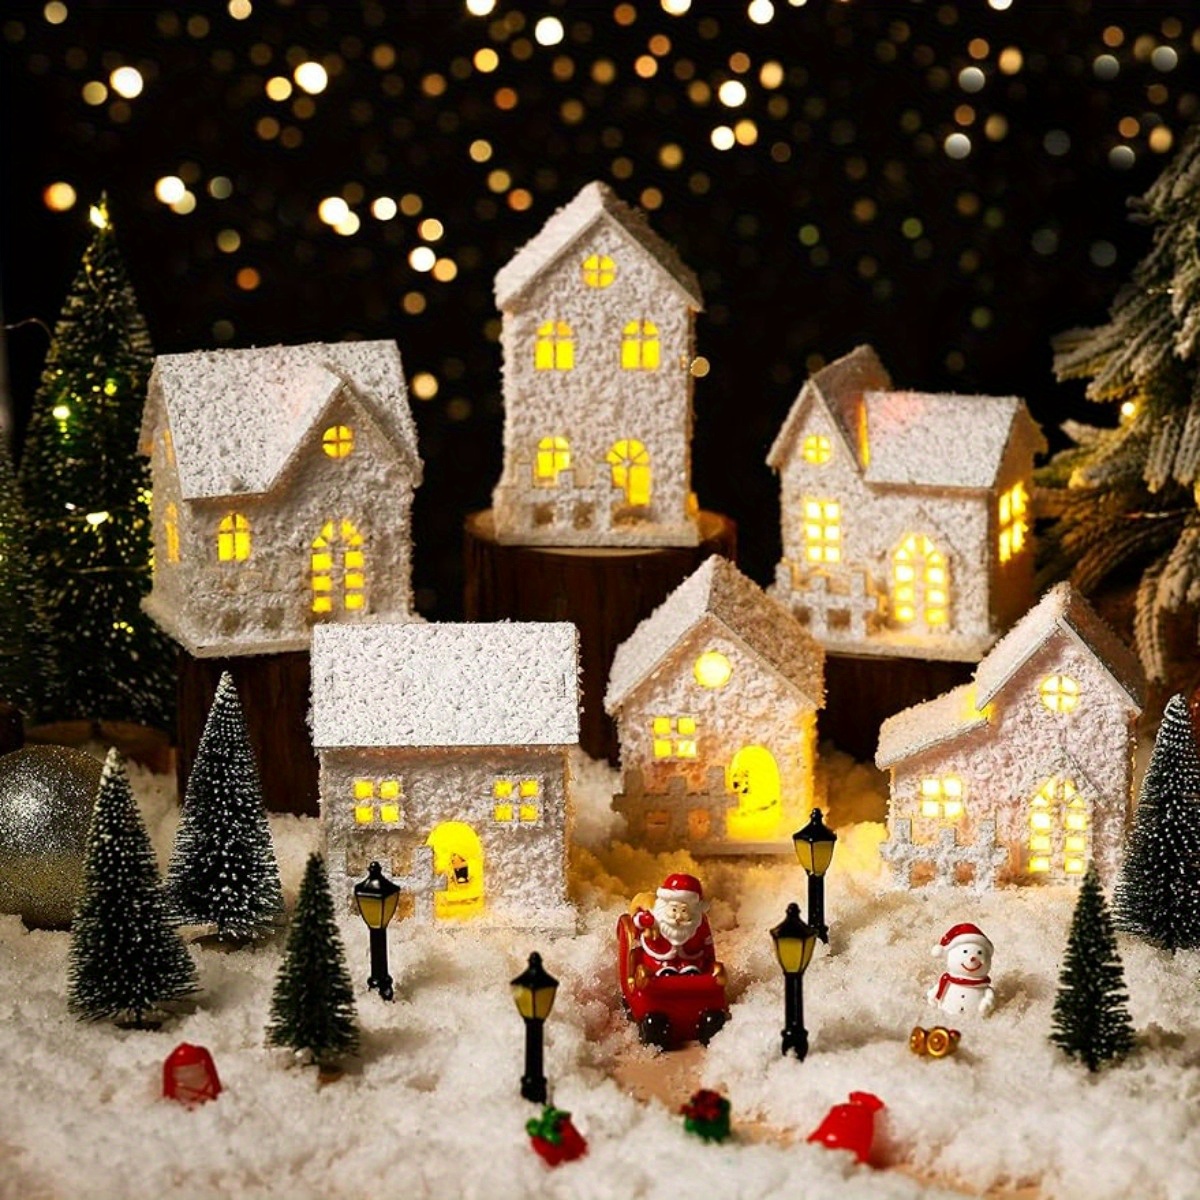 Las casas de dulces para decoración es una tradición navideña muy